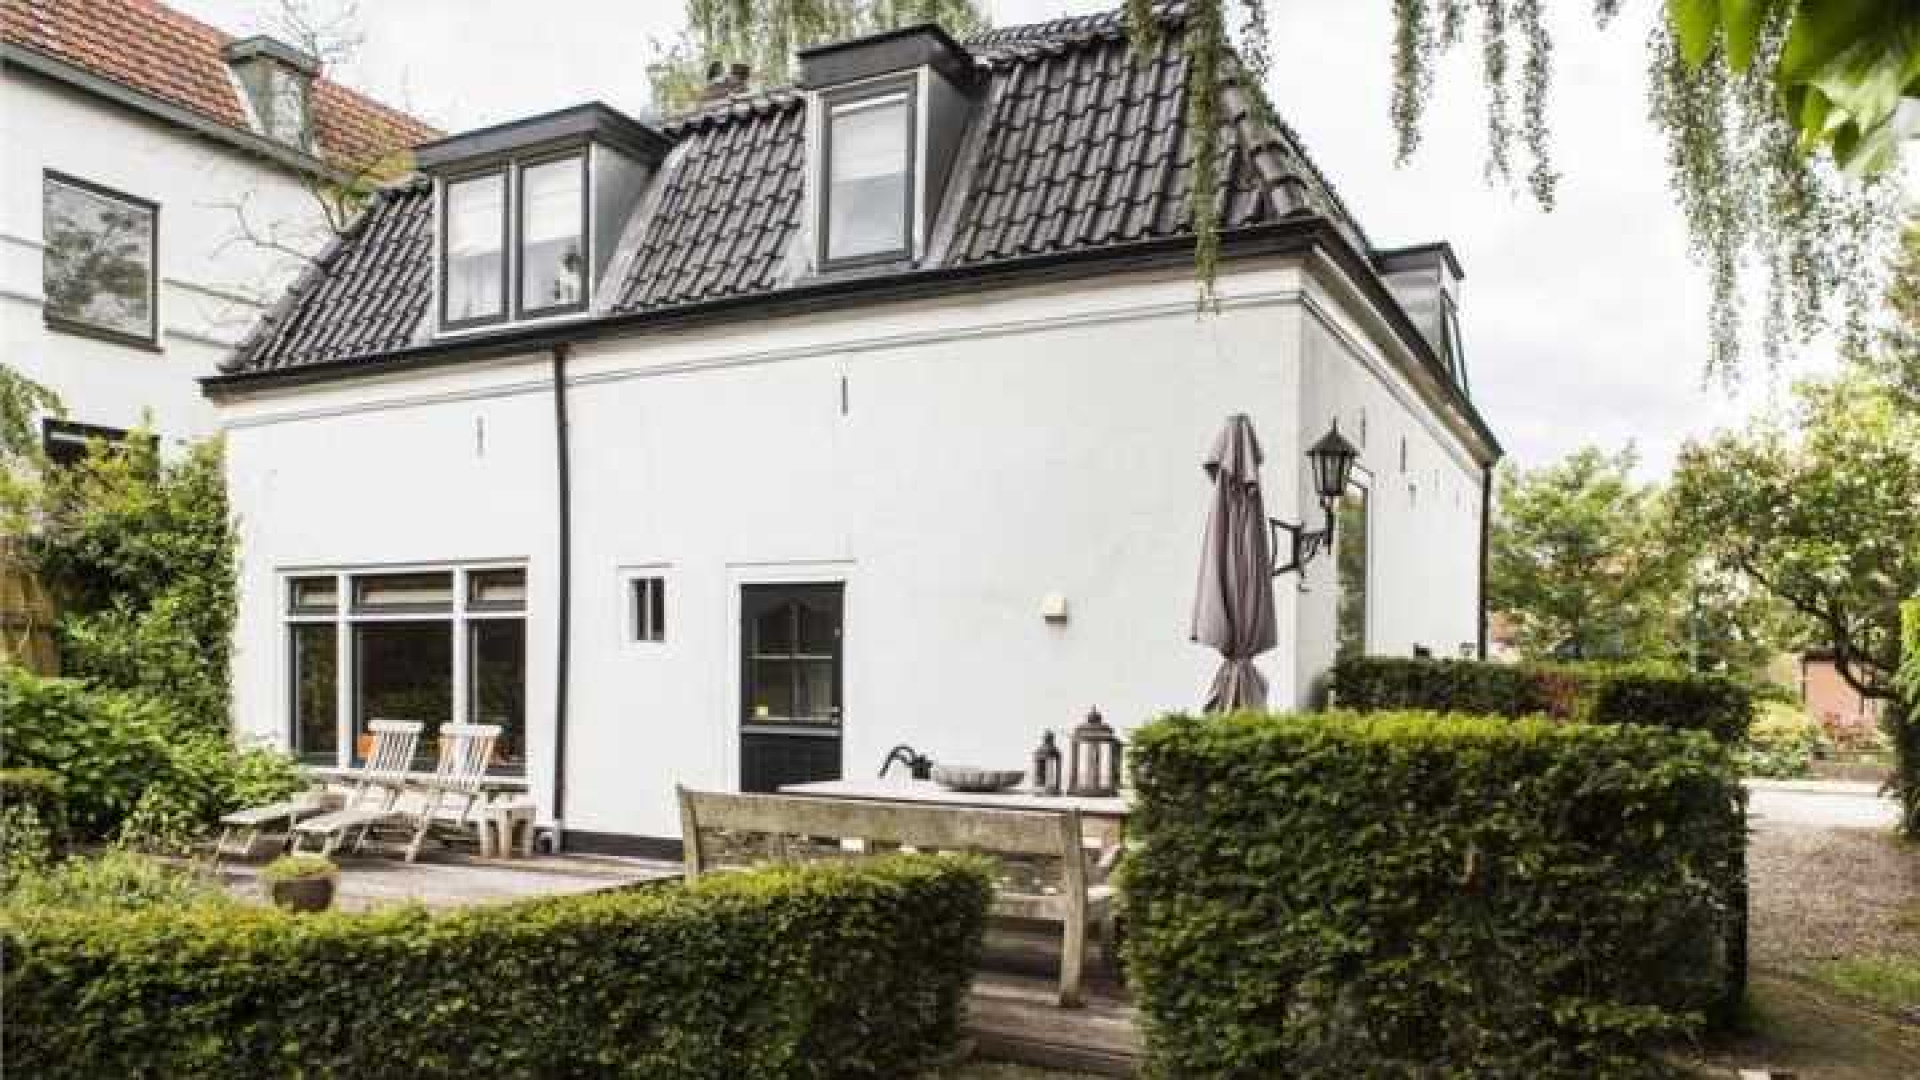 Mariska Hulscher zet haar villa weer tegen lagere prijs in de verkoop. Zie fot's